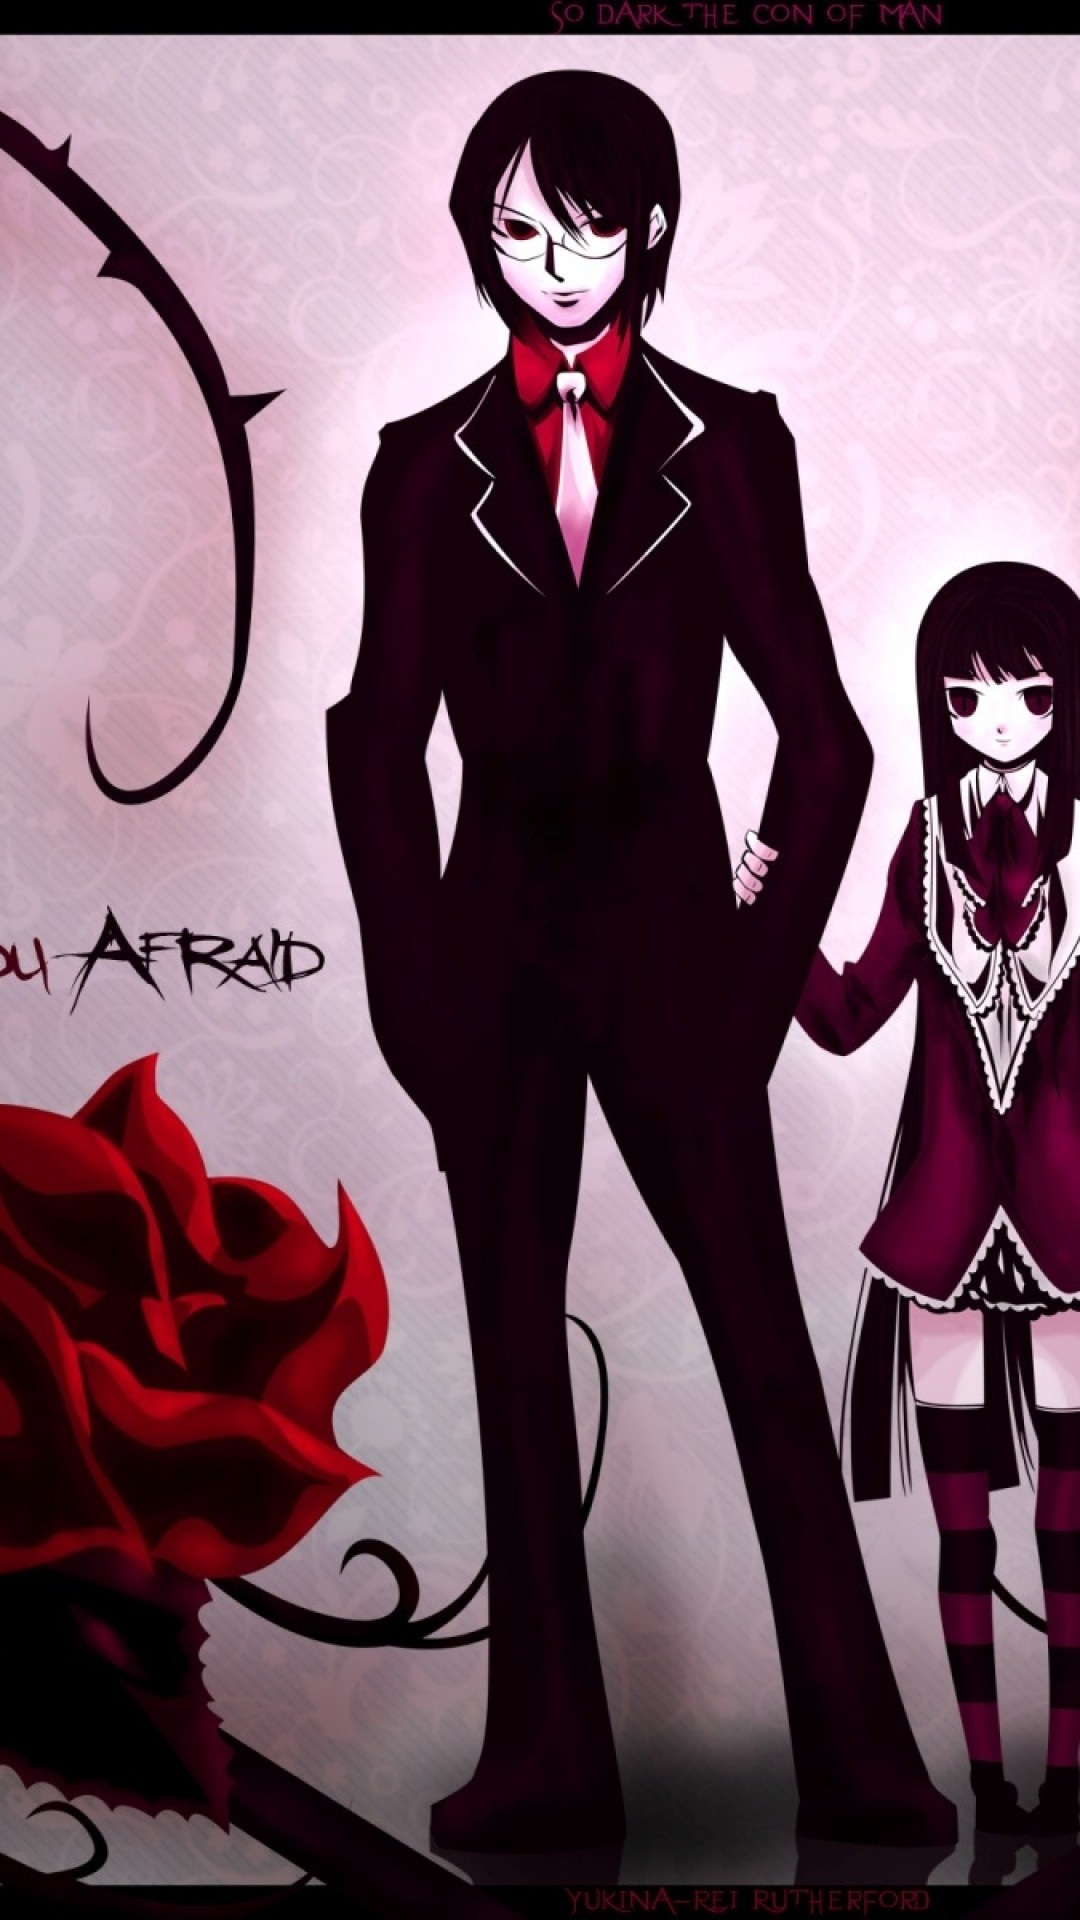 Wallpaper boy, dark anime, girl, rose, background